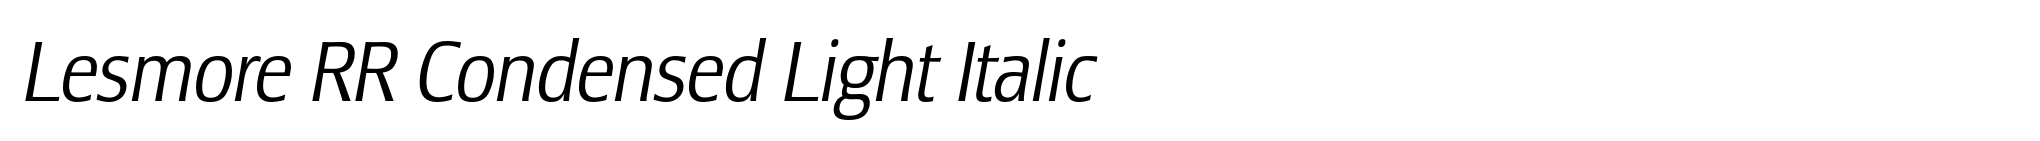 Lesmore RR Condensed Light Italic image